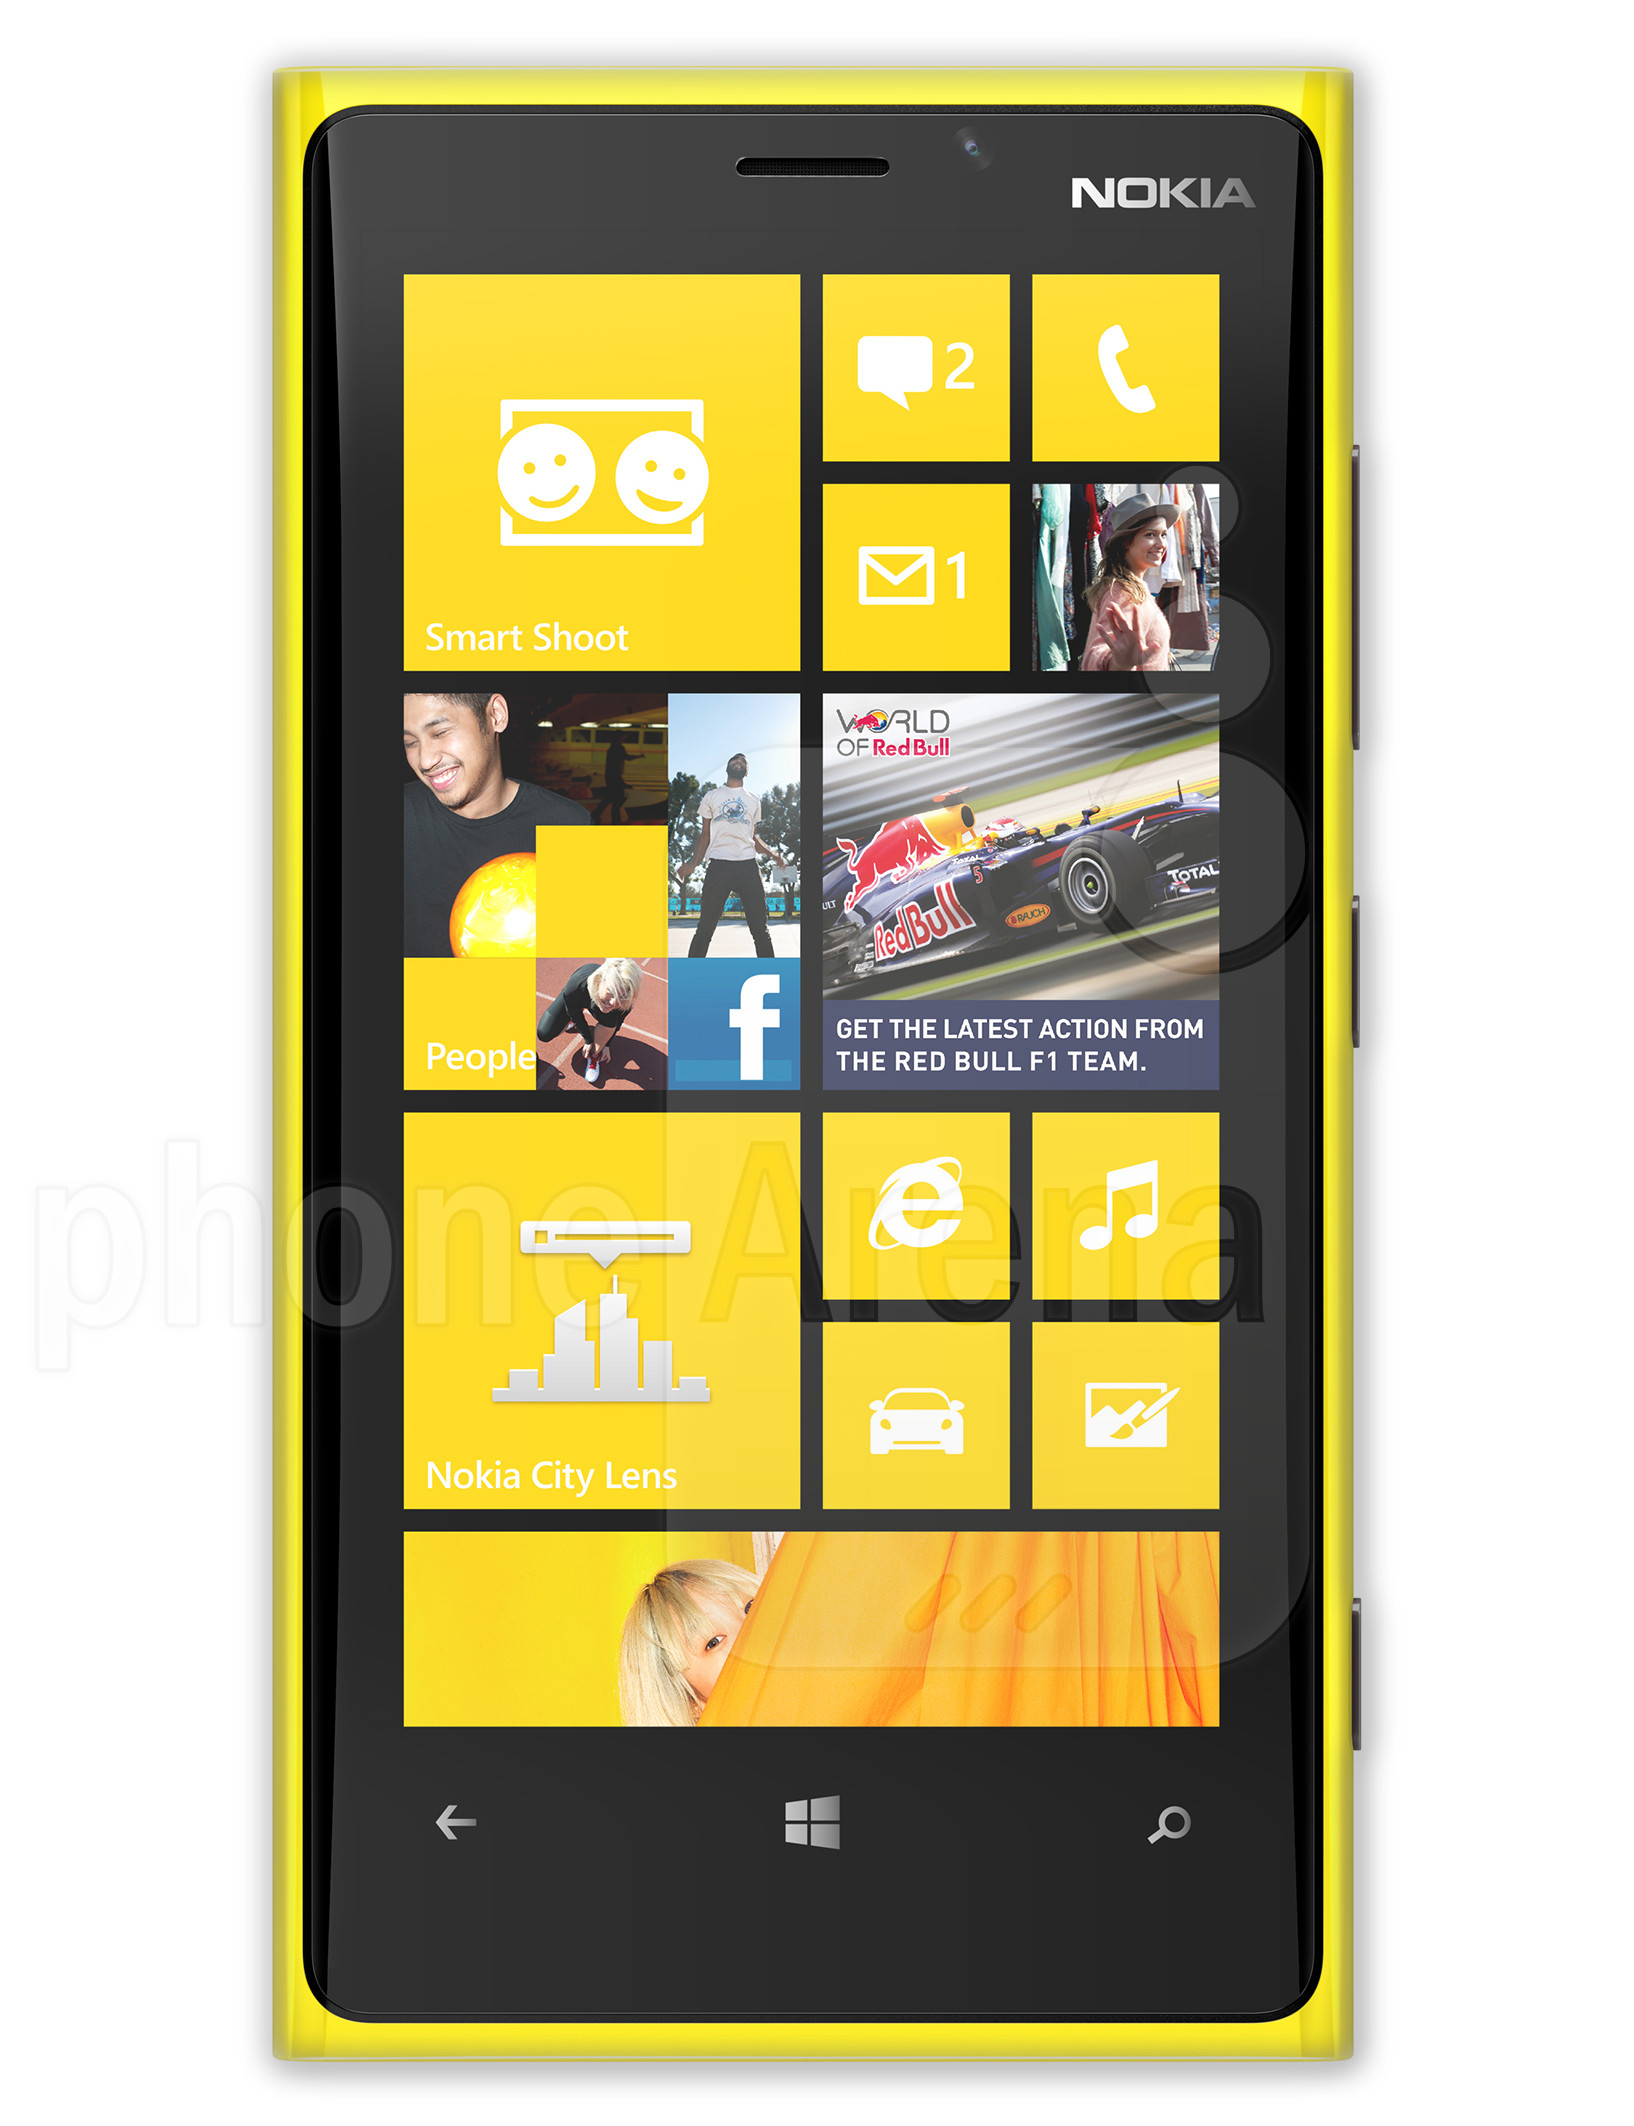 Nokia Lumia 920 specs